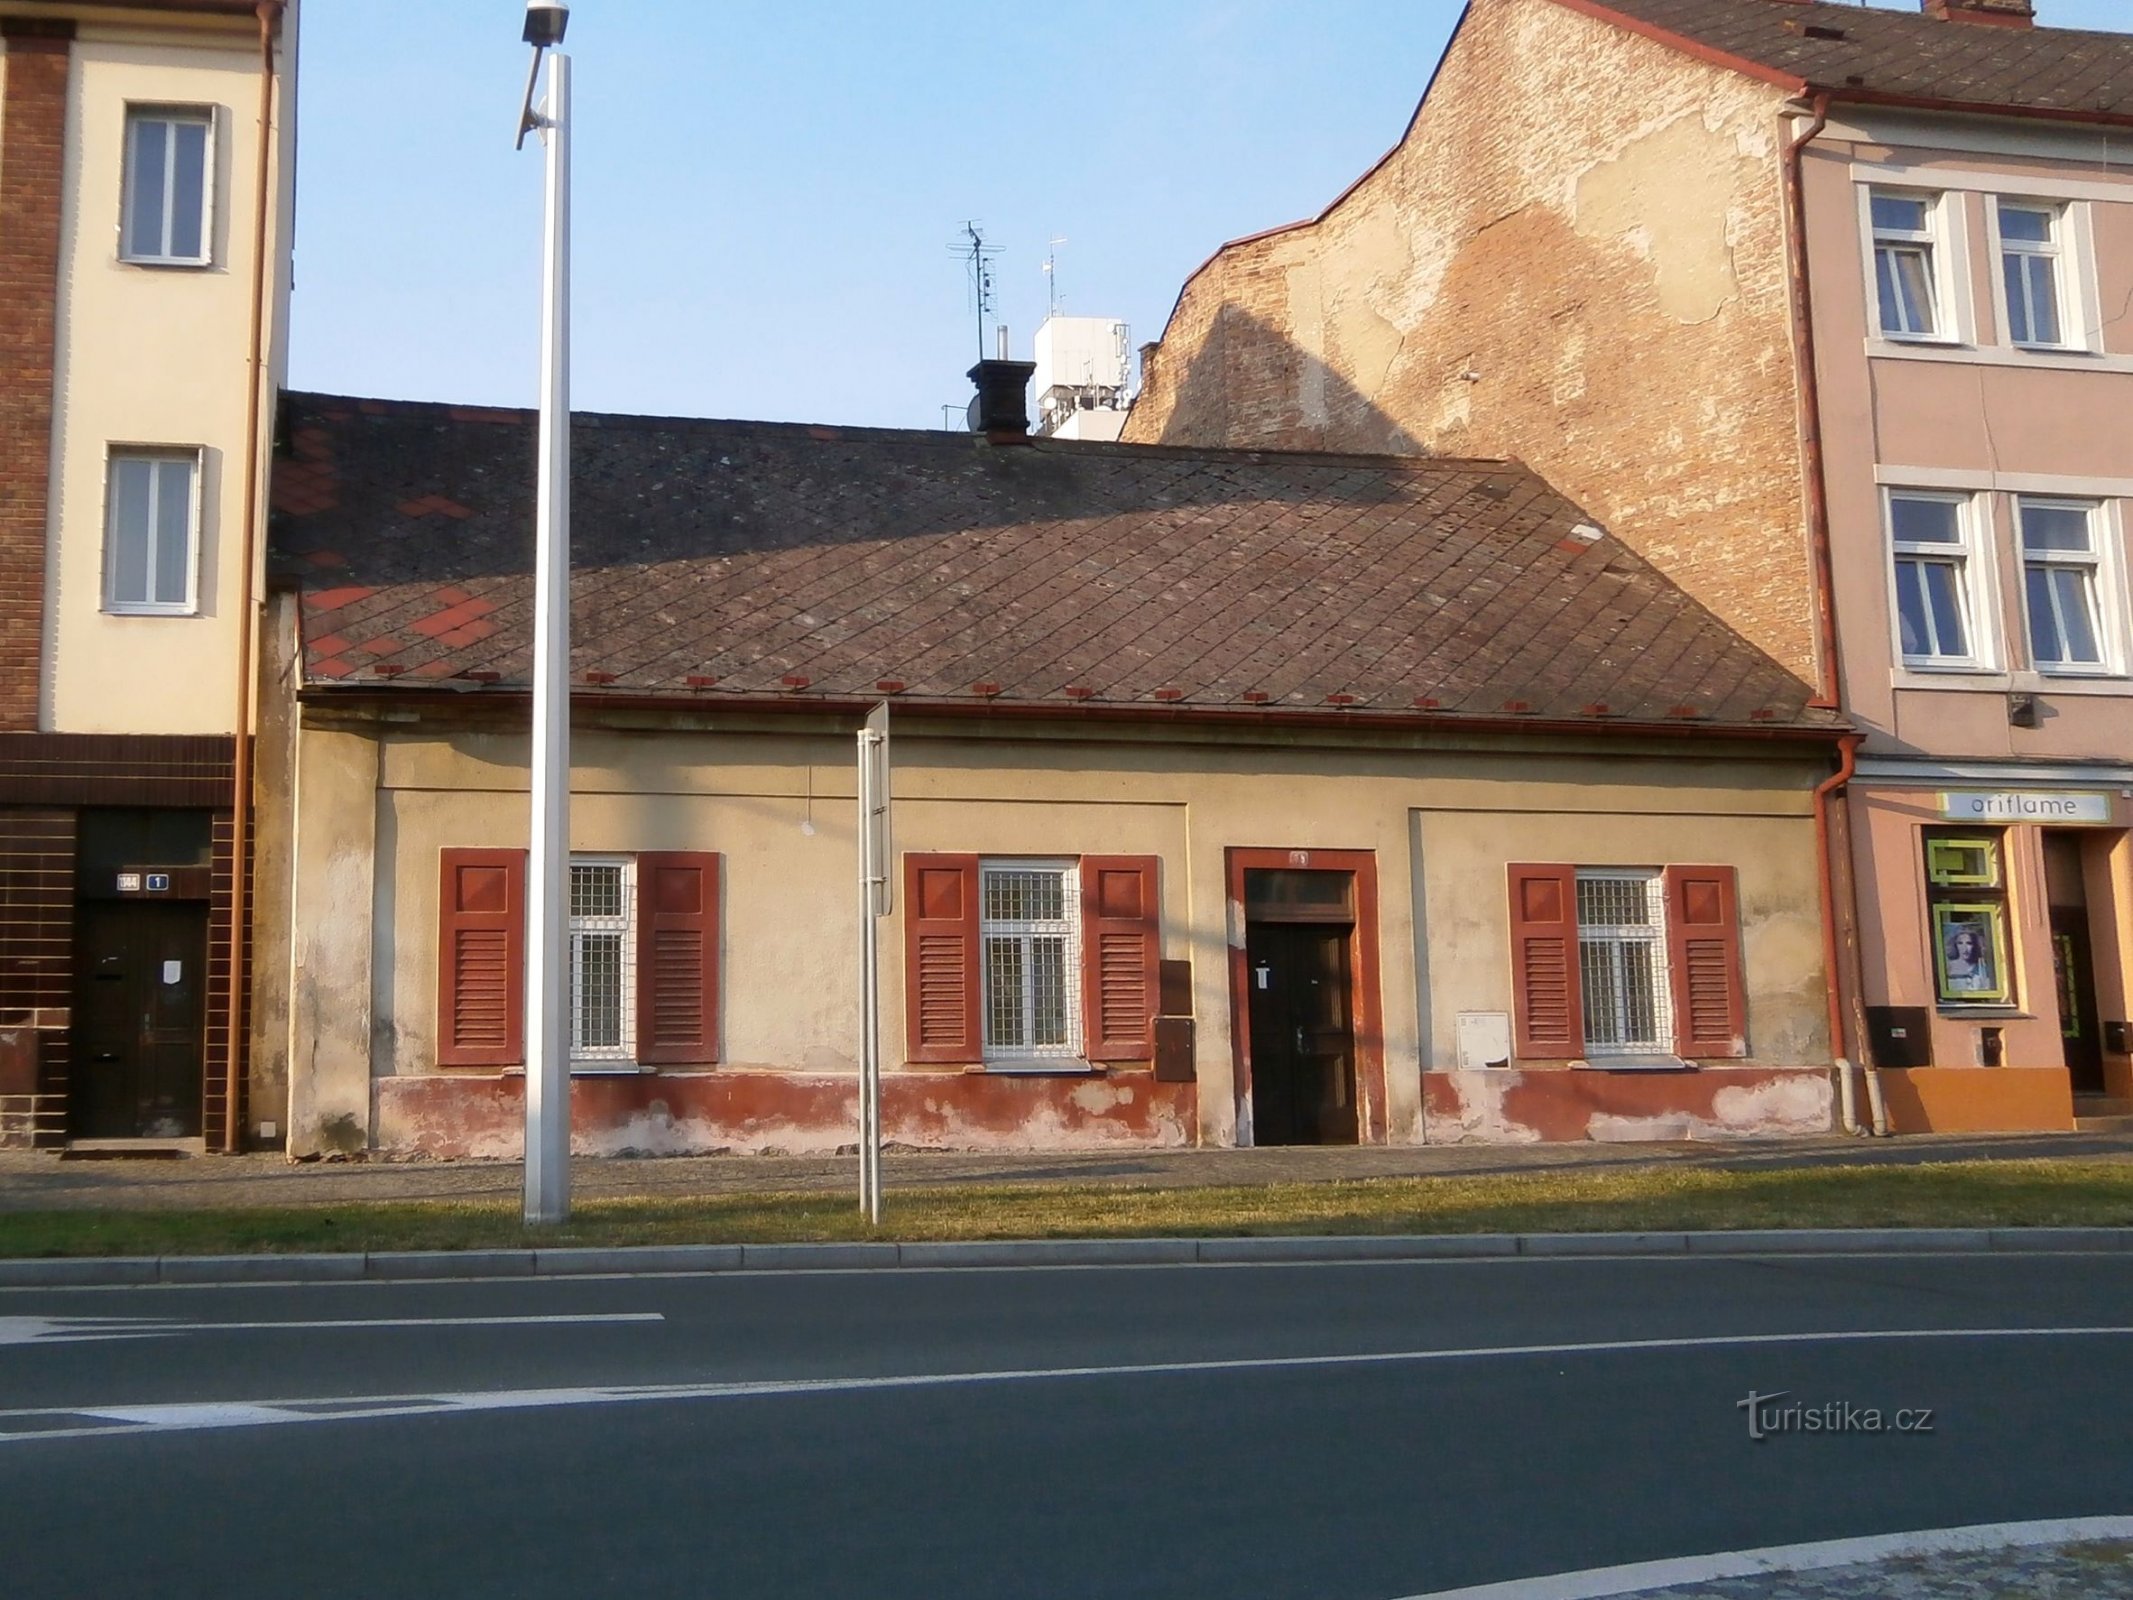 Stazione n. 78 (Hradec Králové, 27.7.2014/XNUMX/XNUMX)